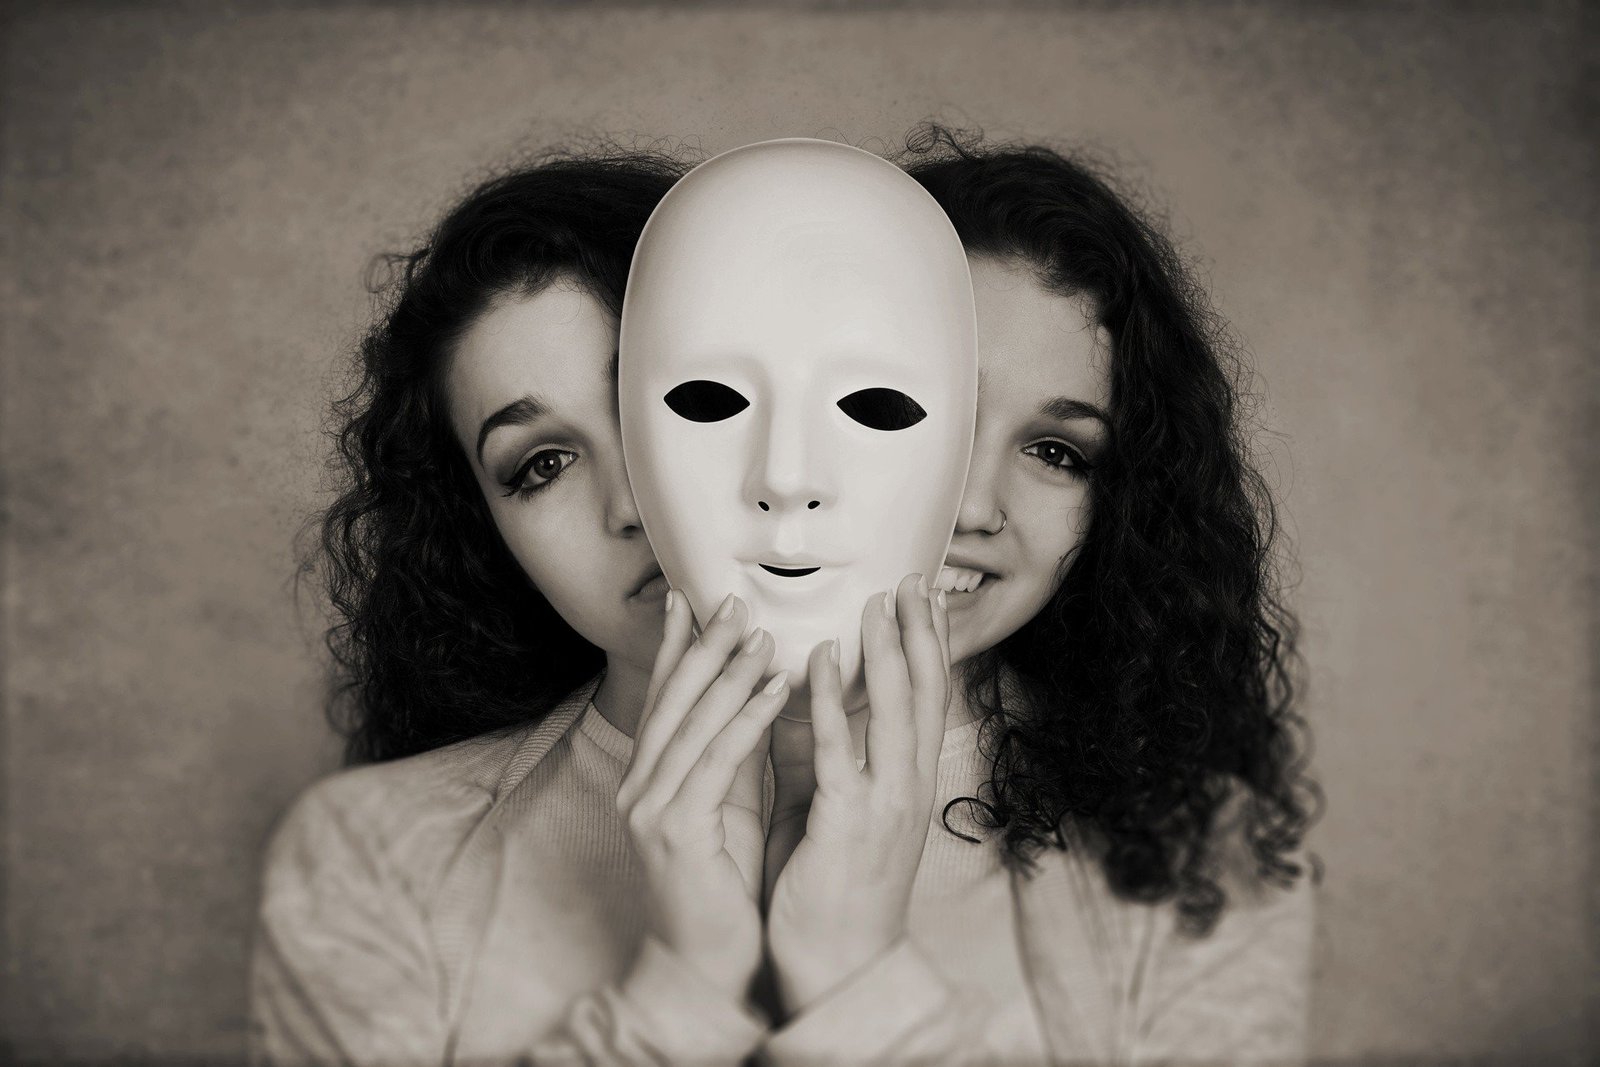 Uma narcisista oculta se escondendo atrás de uma máscara